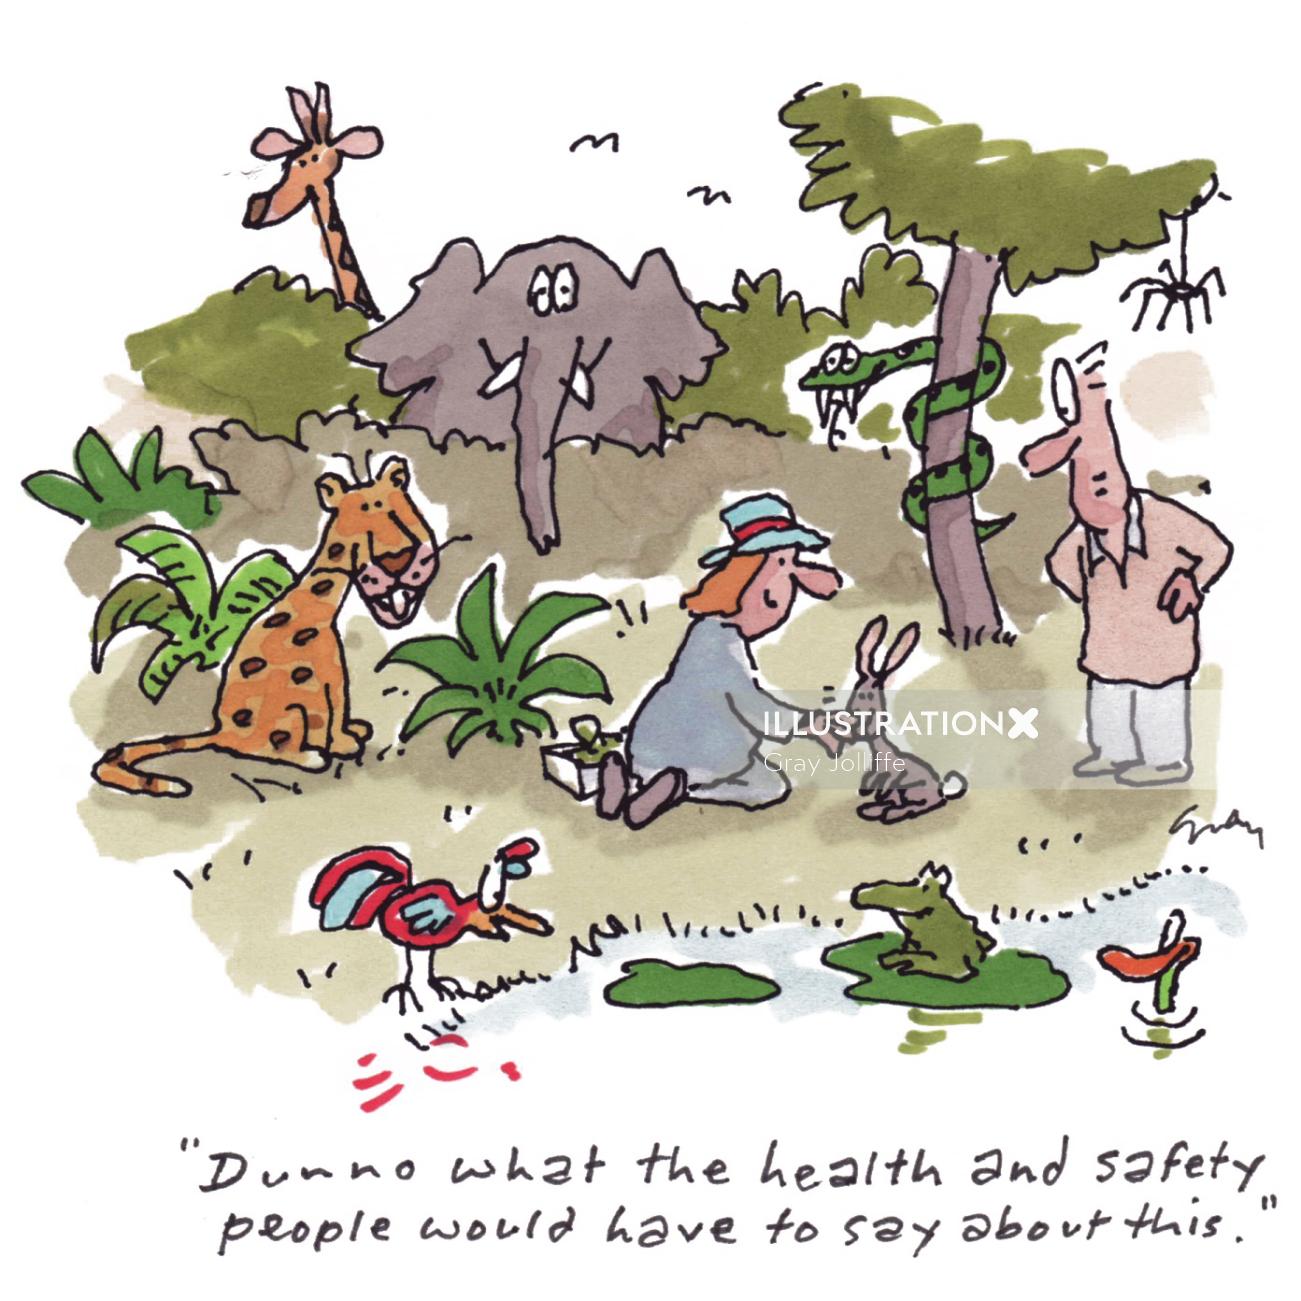 Ilustração da natureza da saúde e segurança dos animais